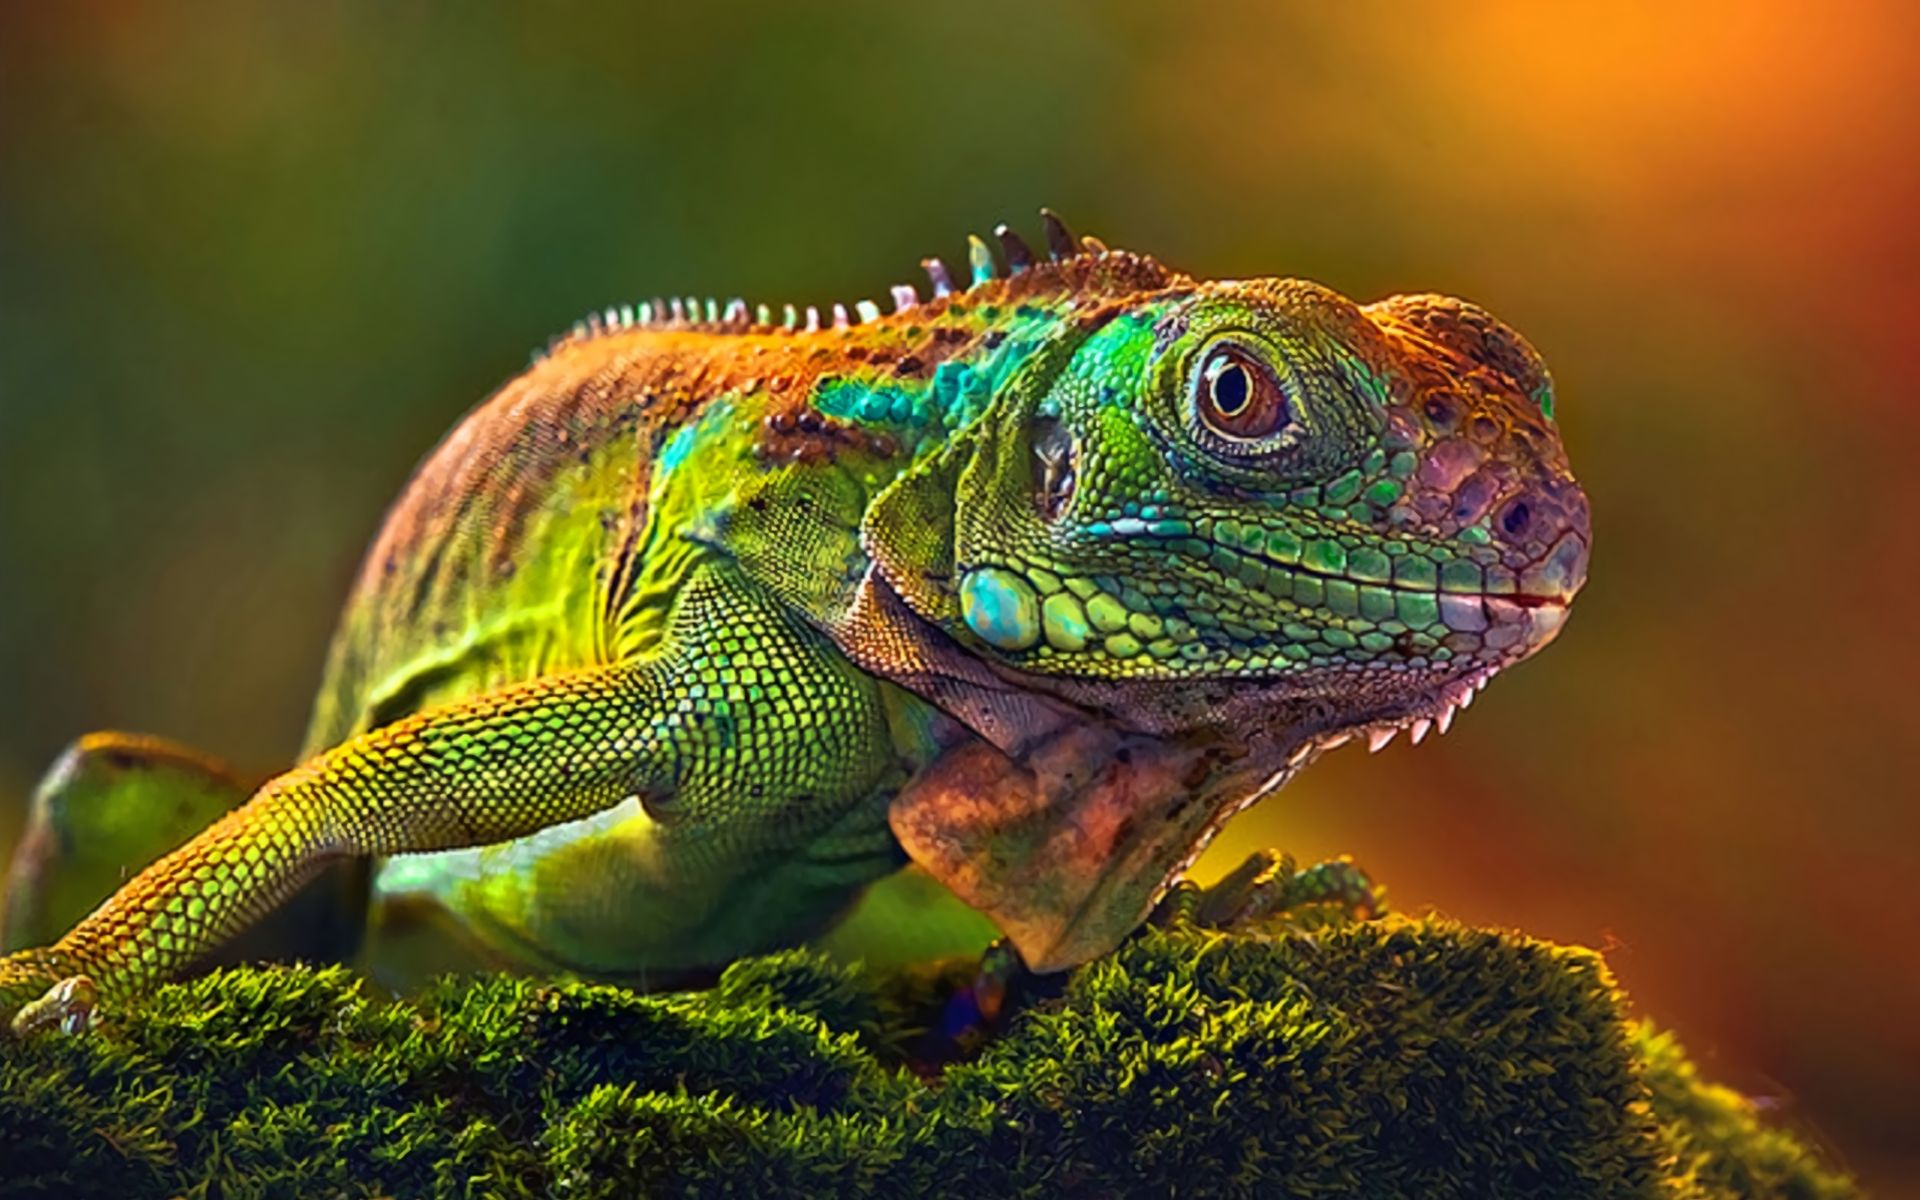 Descarga gratuita de fondo de pantalla para móvil de Animales, Lagarto, Reptiles, Iguana.